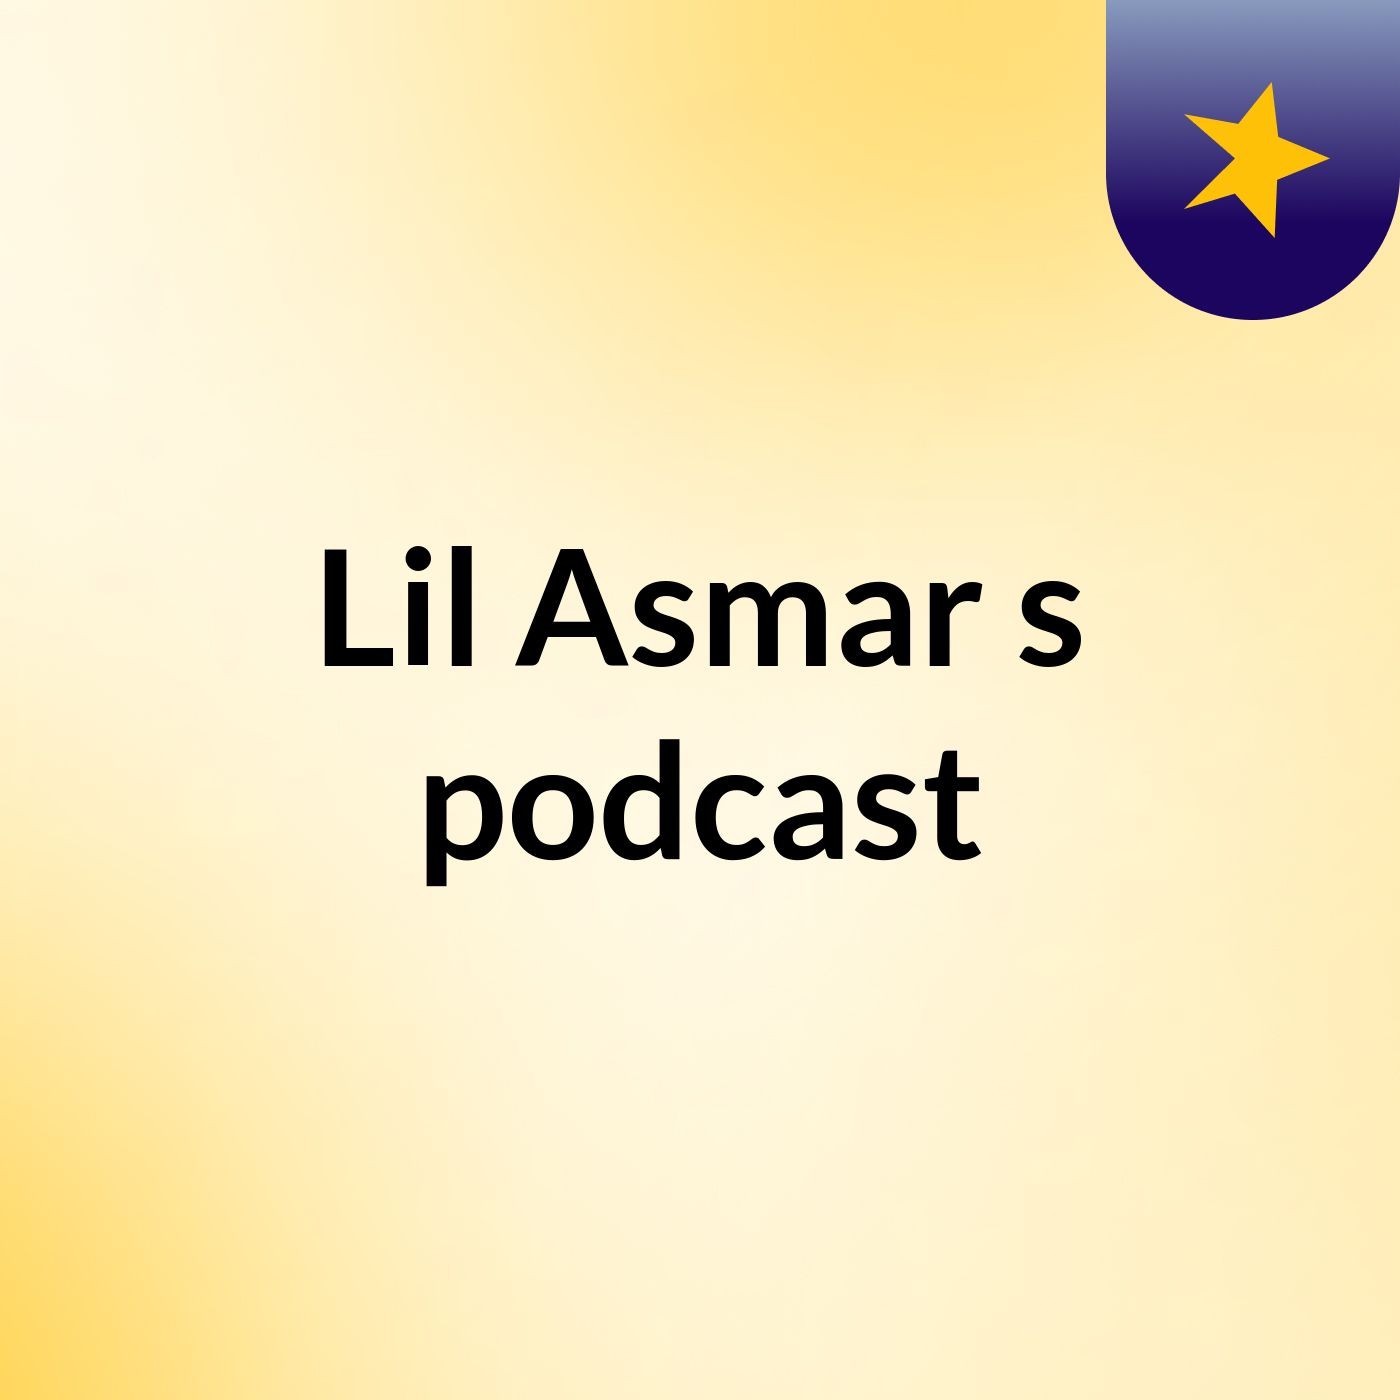 Episode 26 - Lil Asmar's podcast